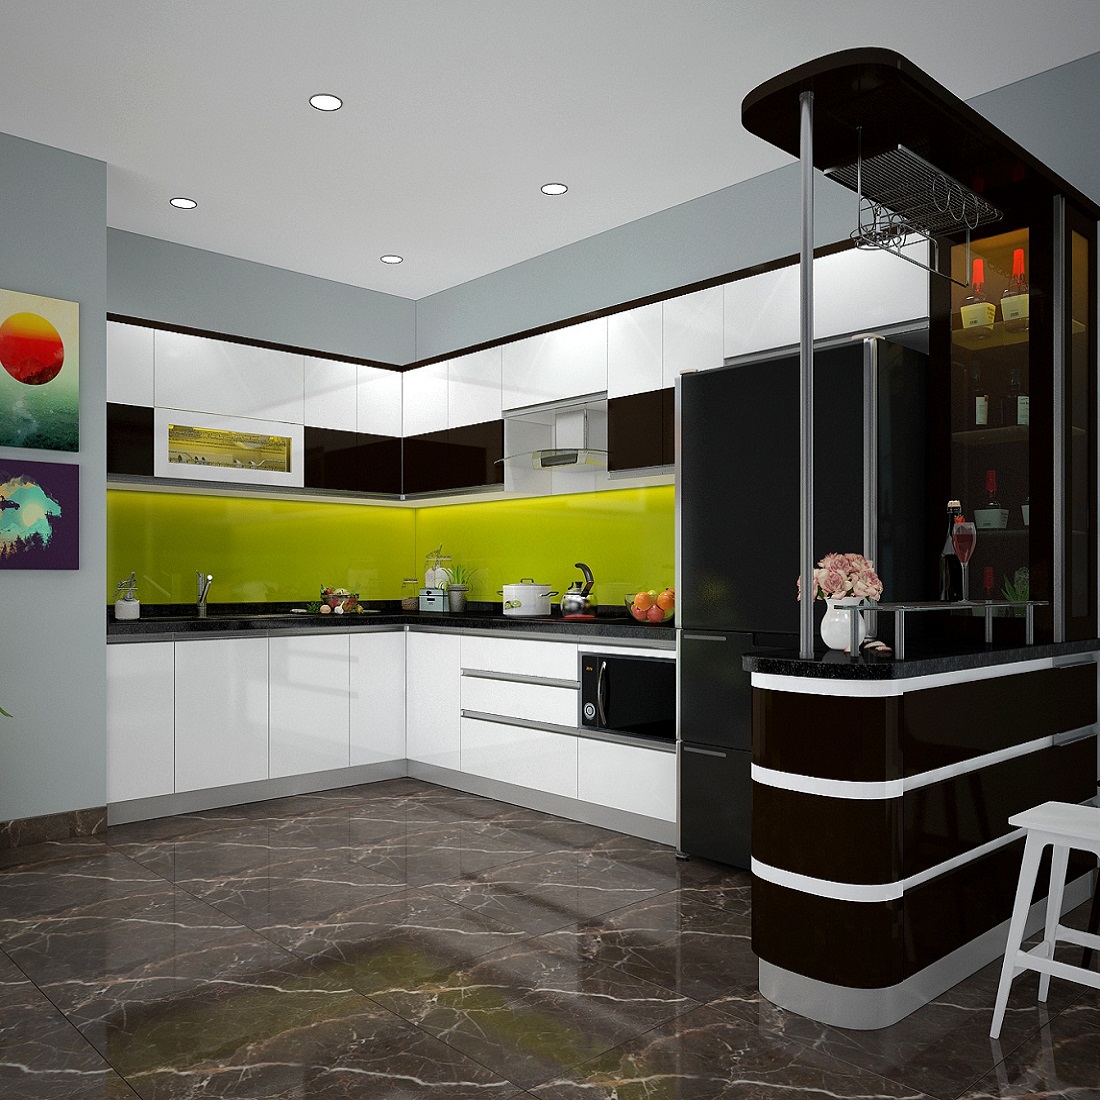 Beautiful design interior - modern green kitchen.